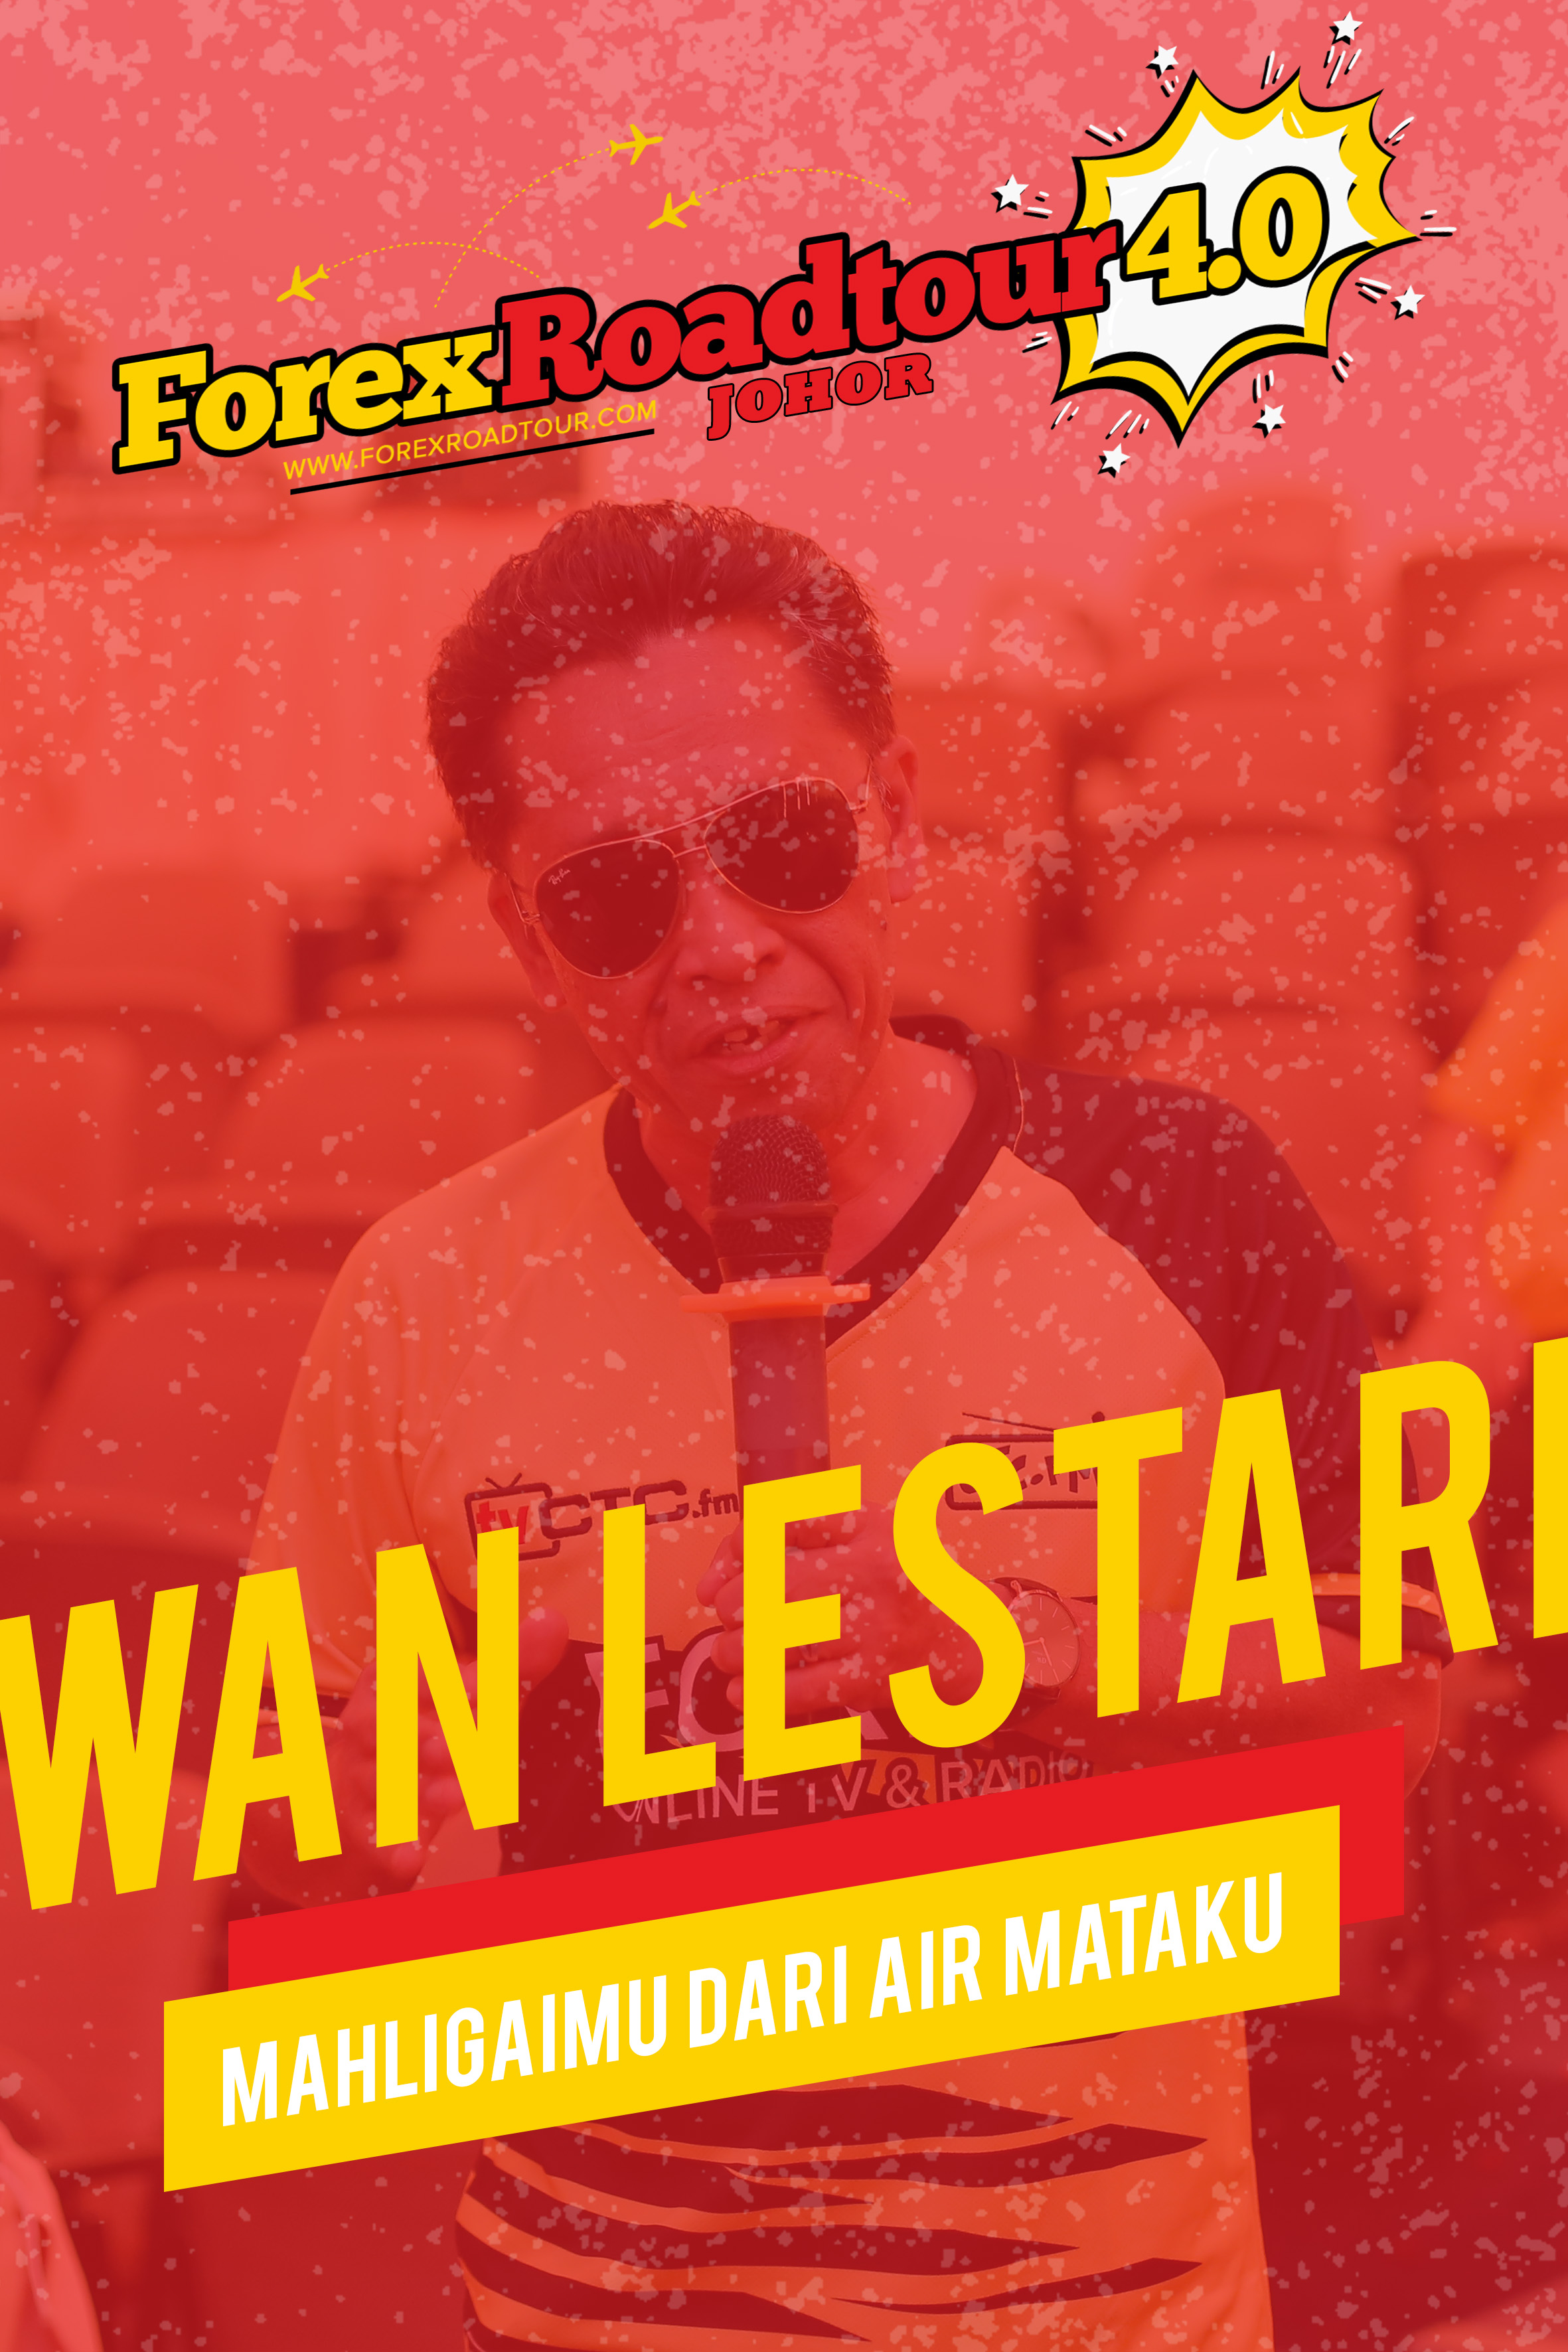 Wan Lestari - Mahligaimu dari Air Mataku [Forex Roadtour 4.0 Johor]